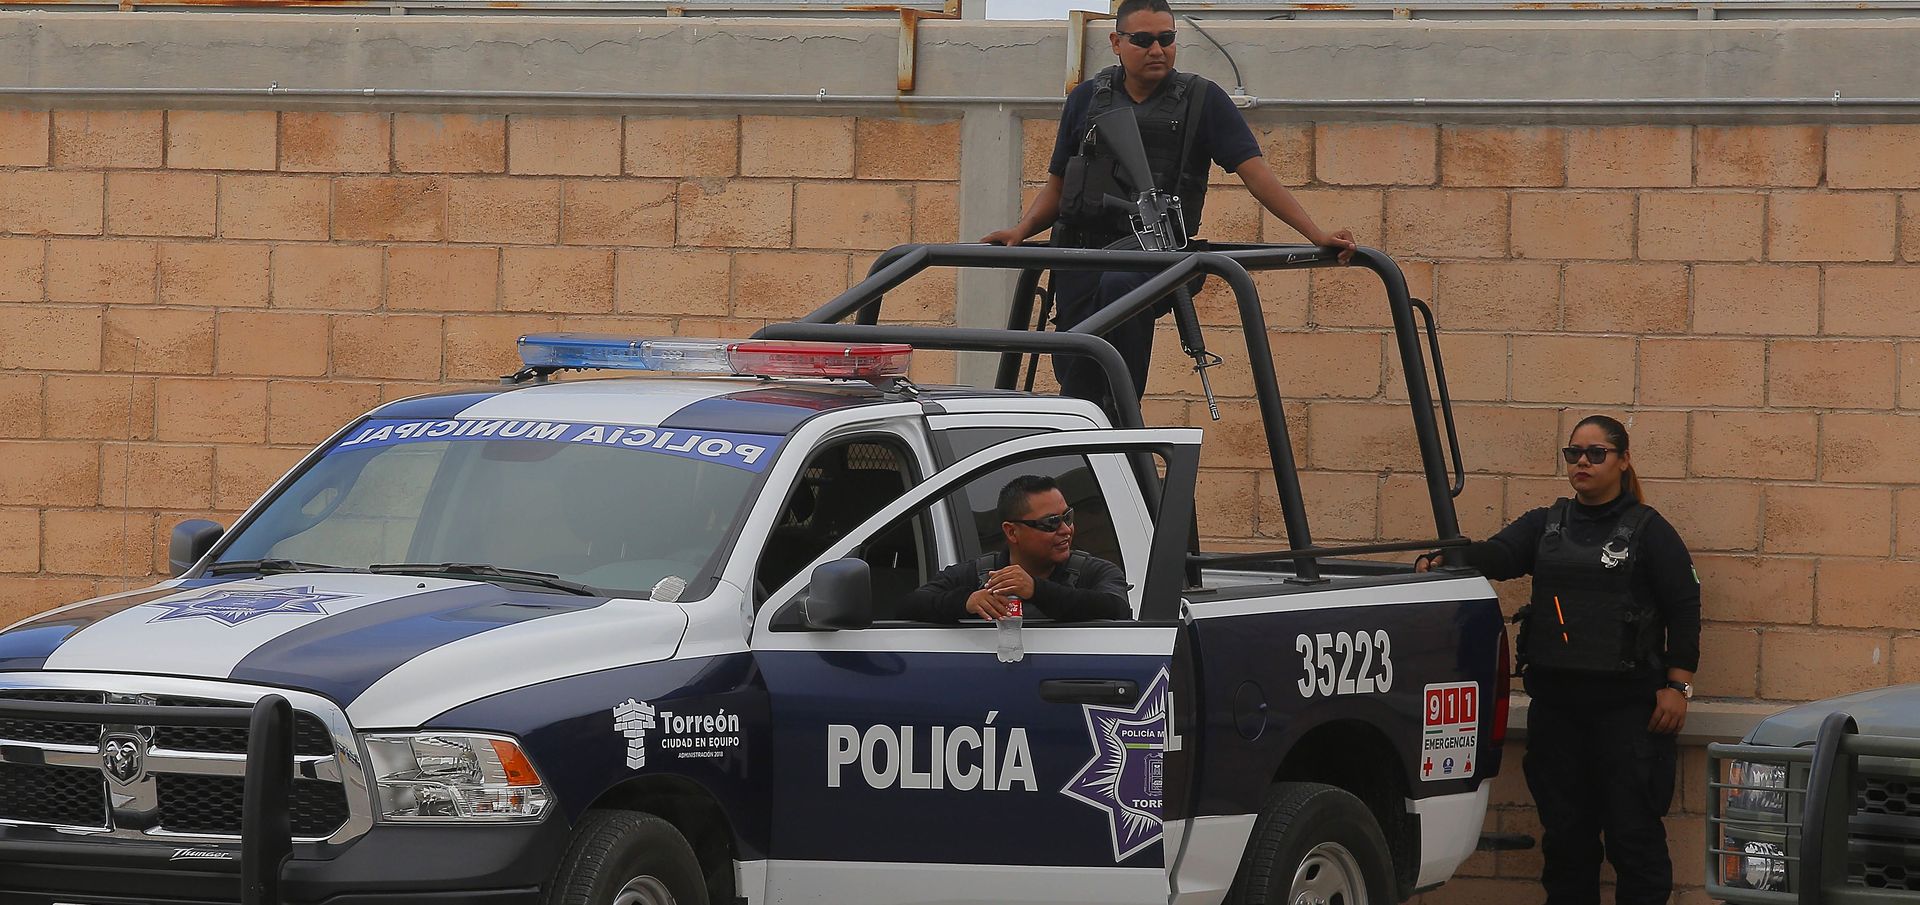 Wszyscy policjanci z miasta Ocampo w Meksyku aresztowani i wywiezieni